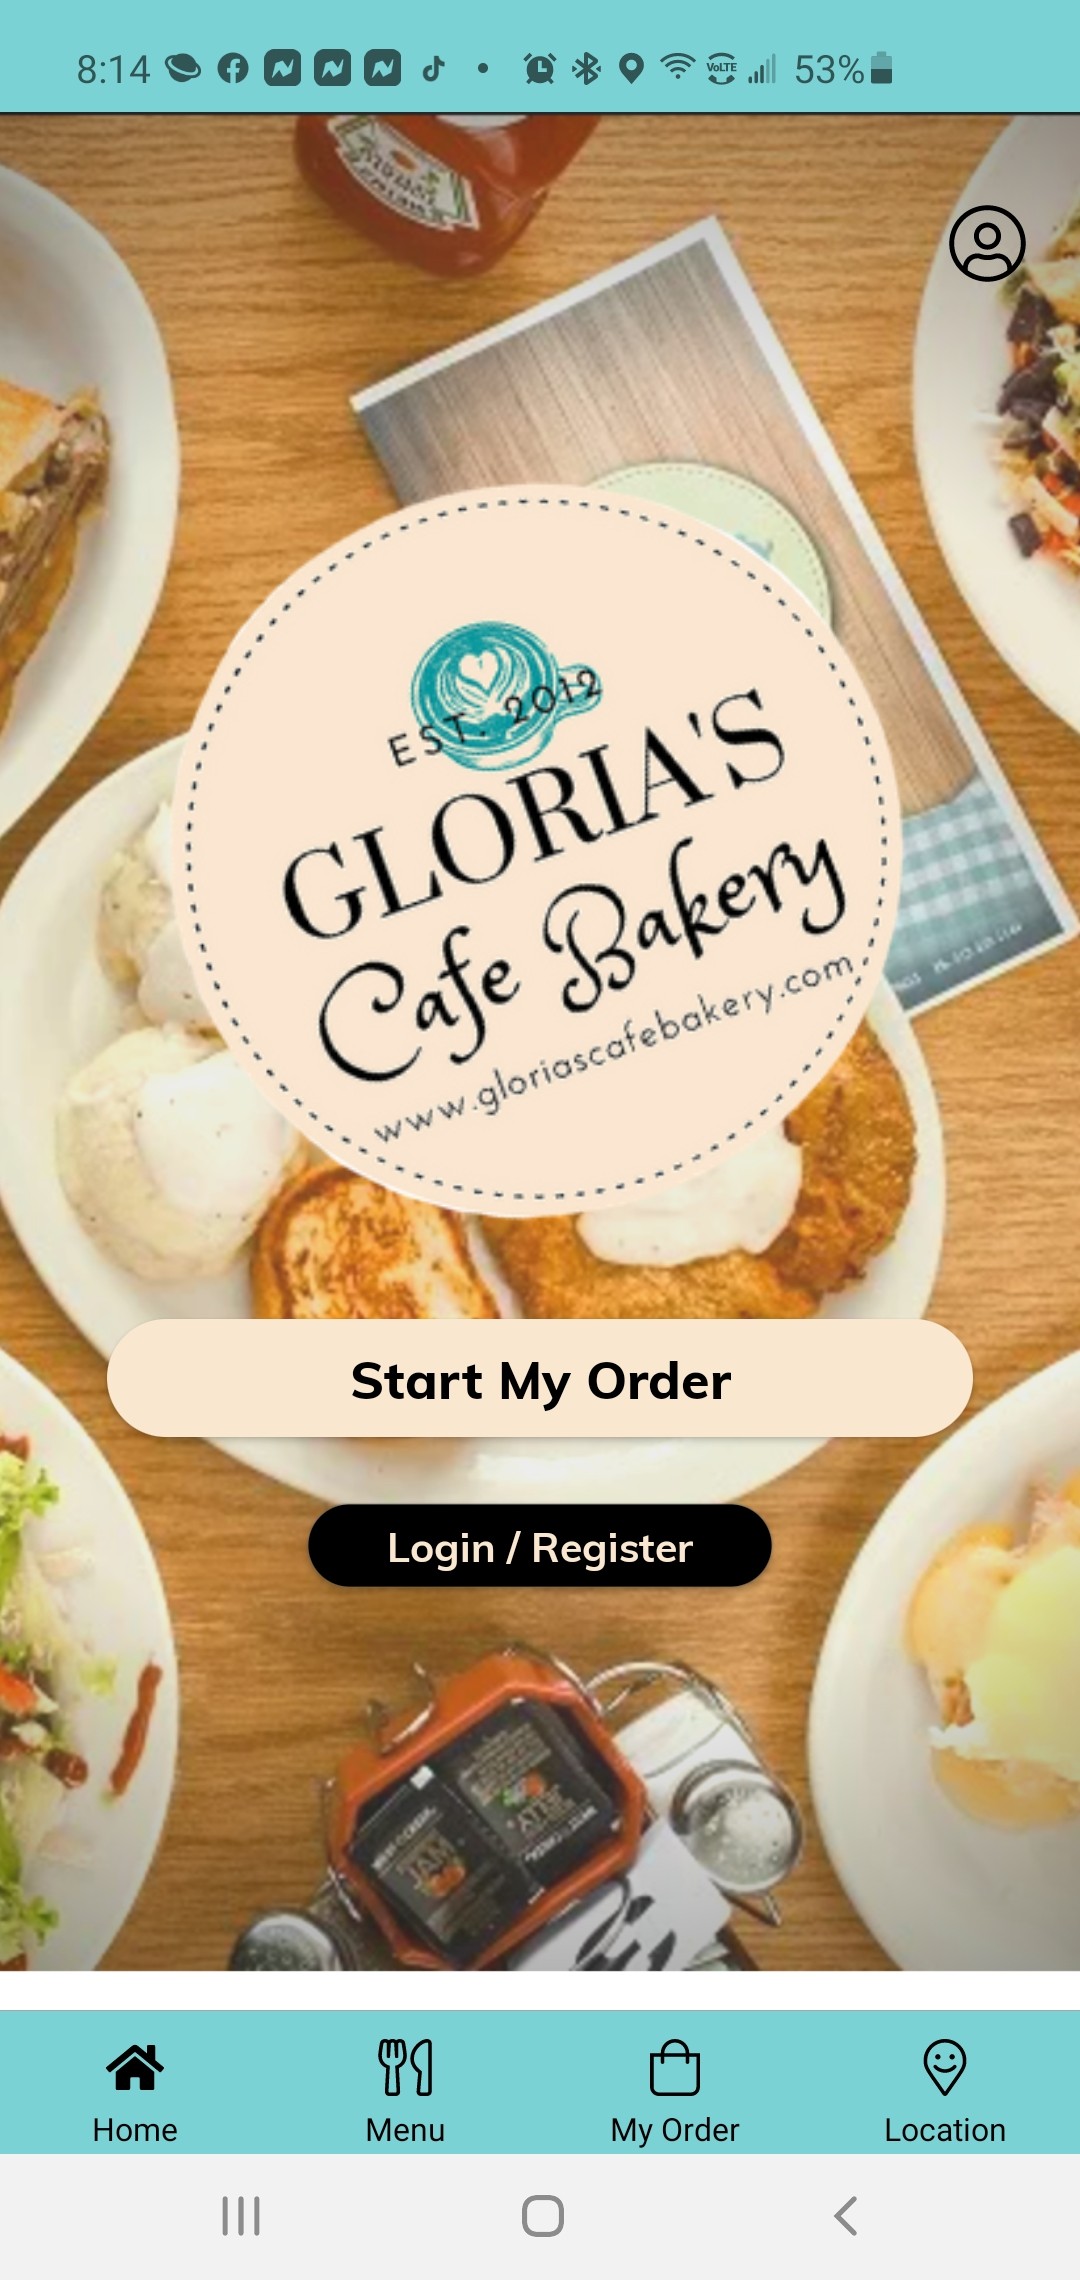 Glorias Cafe & Bakery 1201 N Lakeline blvrd 900